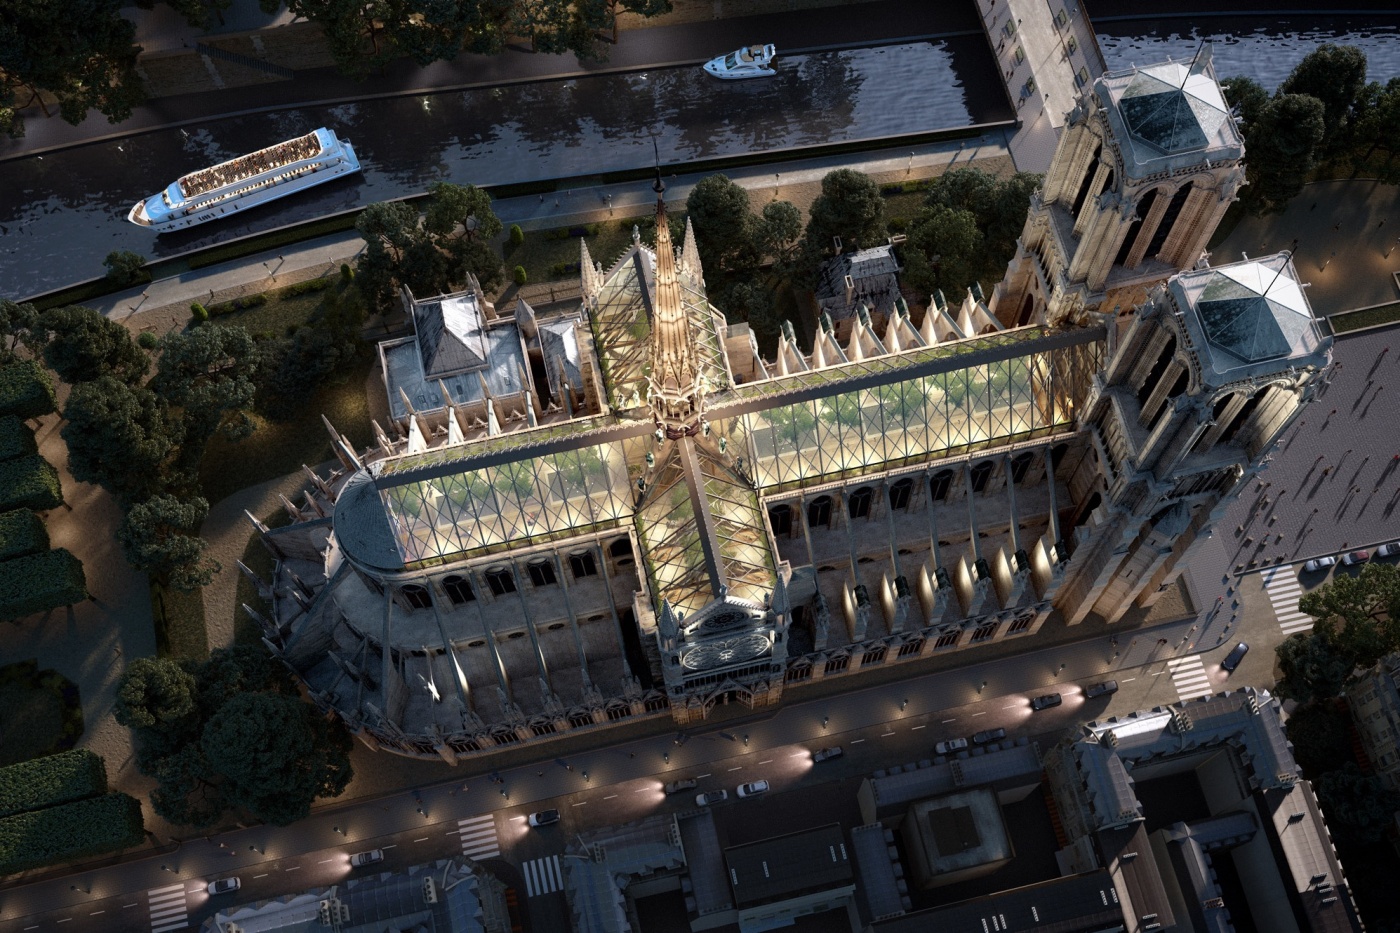 Ricostruire Notre-Dame: di vetro, ipertecnologica; di plastica riciclata e legno, ecologica; oppure “com’era dov’era”? Tutto dipende dalla forza del simbolo. Che cosa rappresenta per noi quella cattedrale?